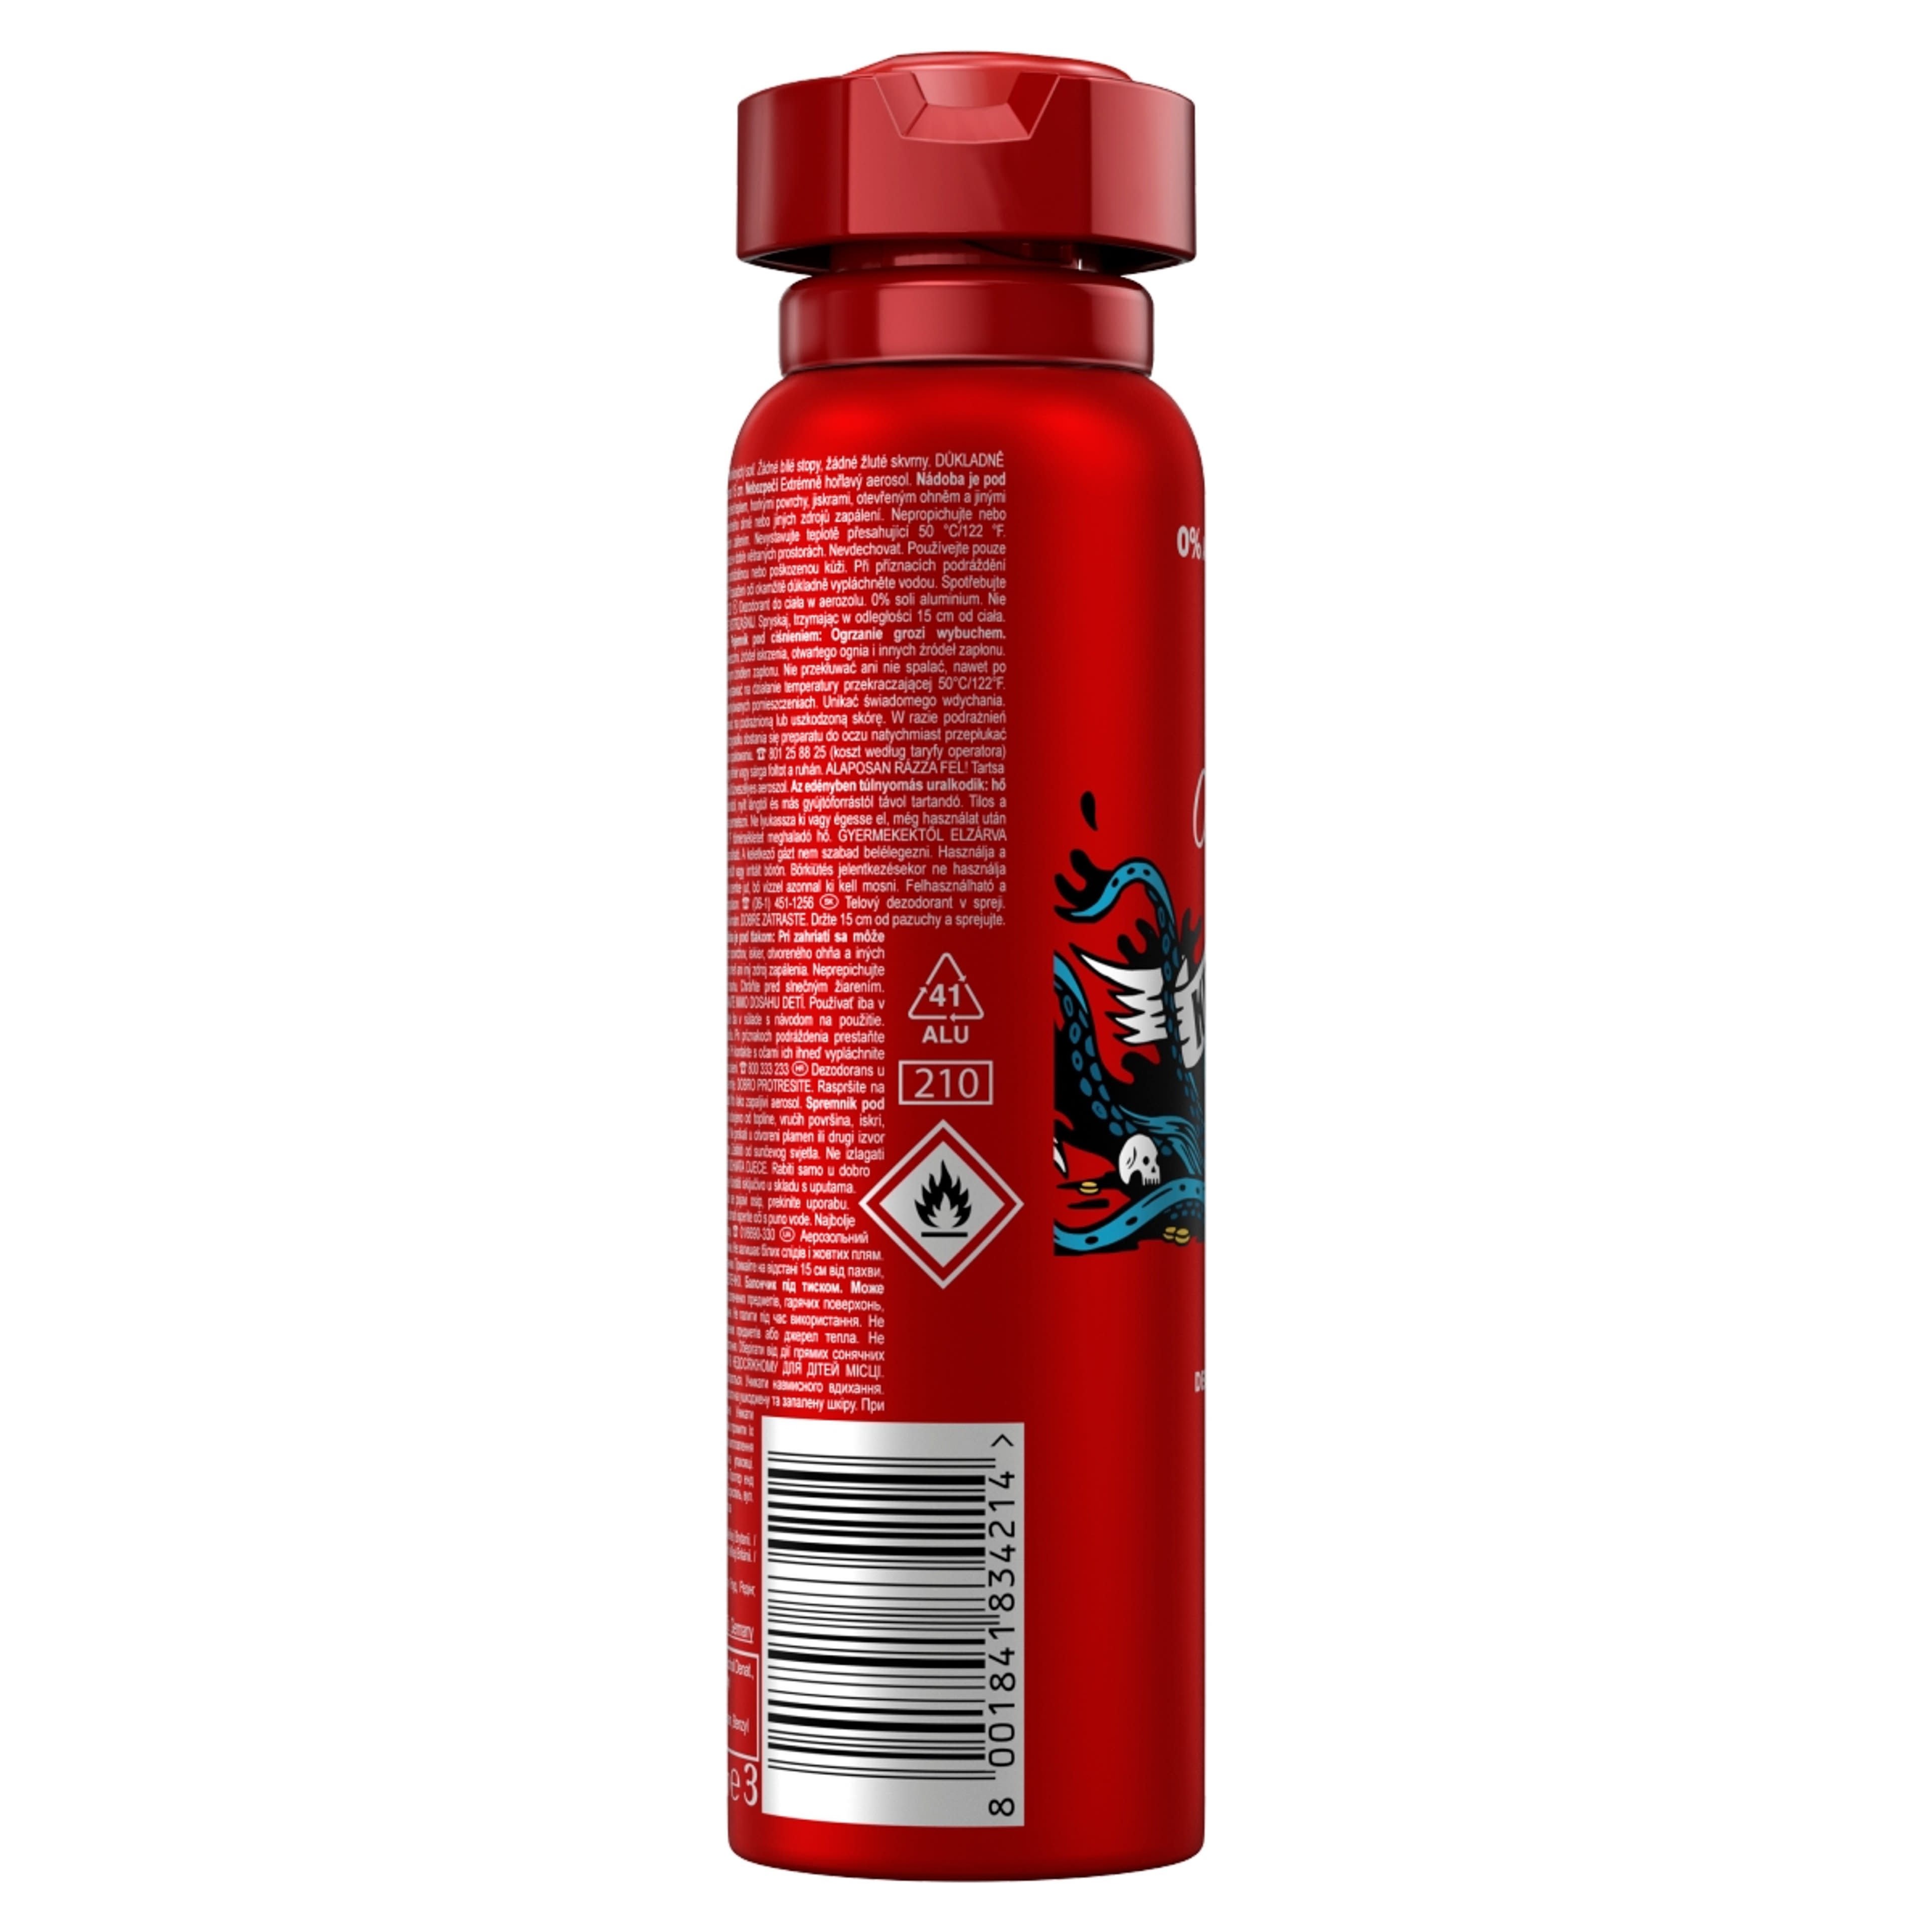 Old Spice deodorant spray krakengard férfi - 150 ml-3